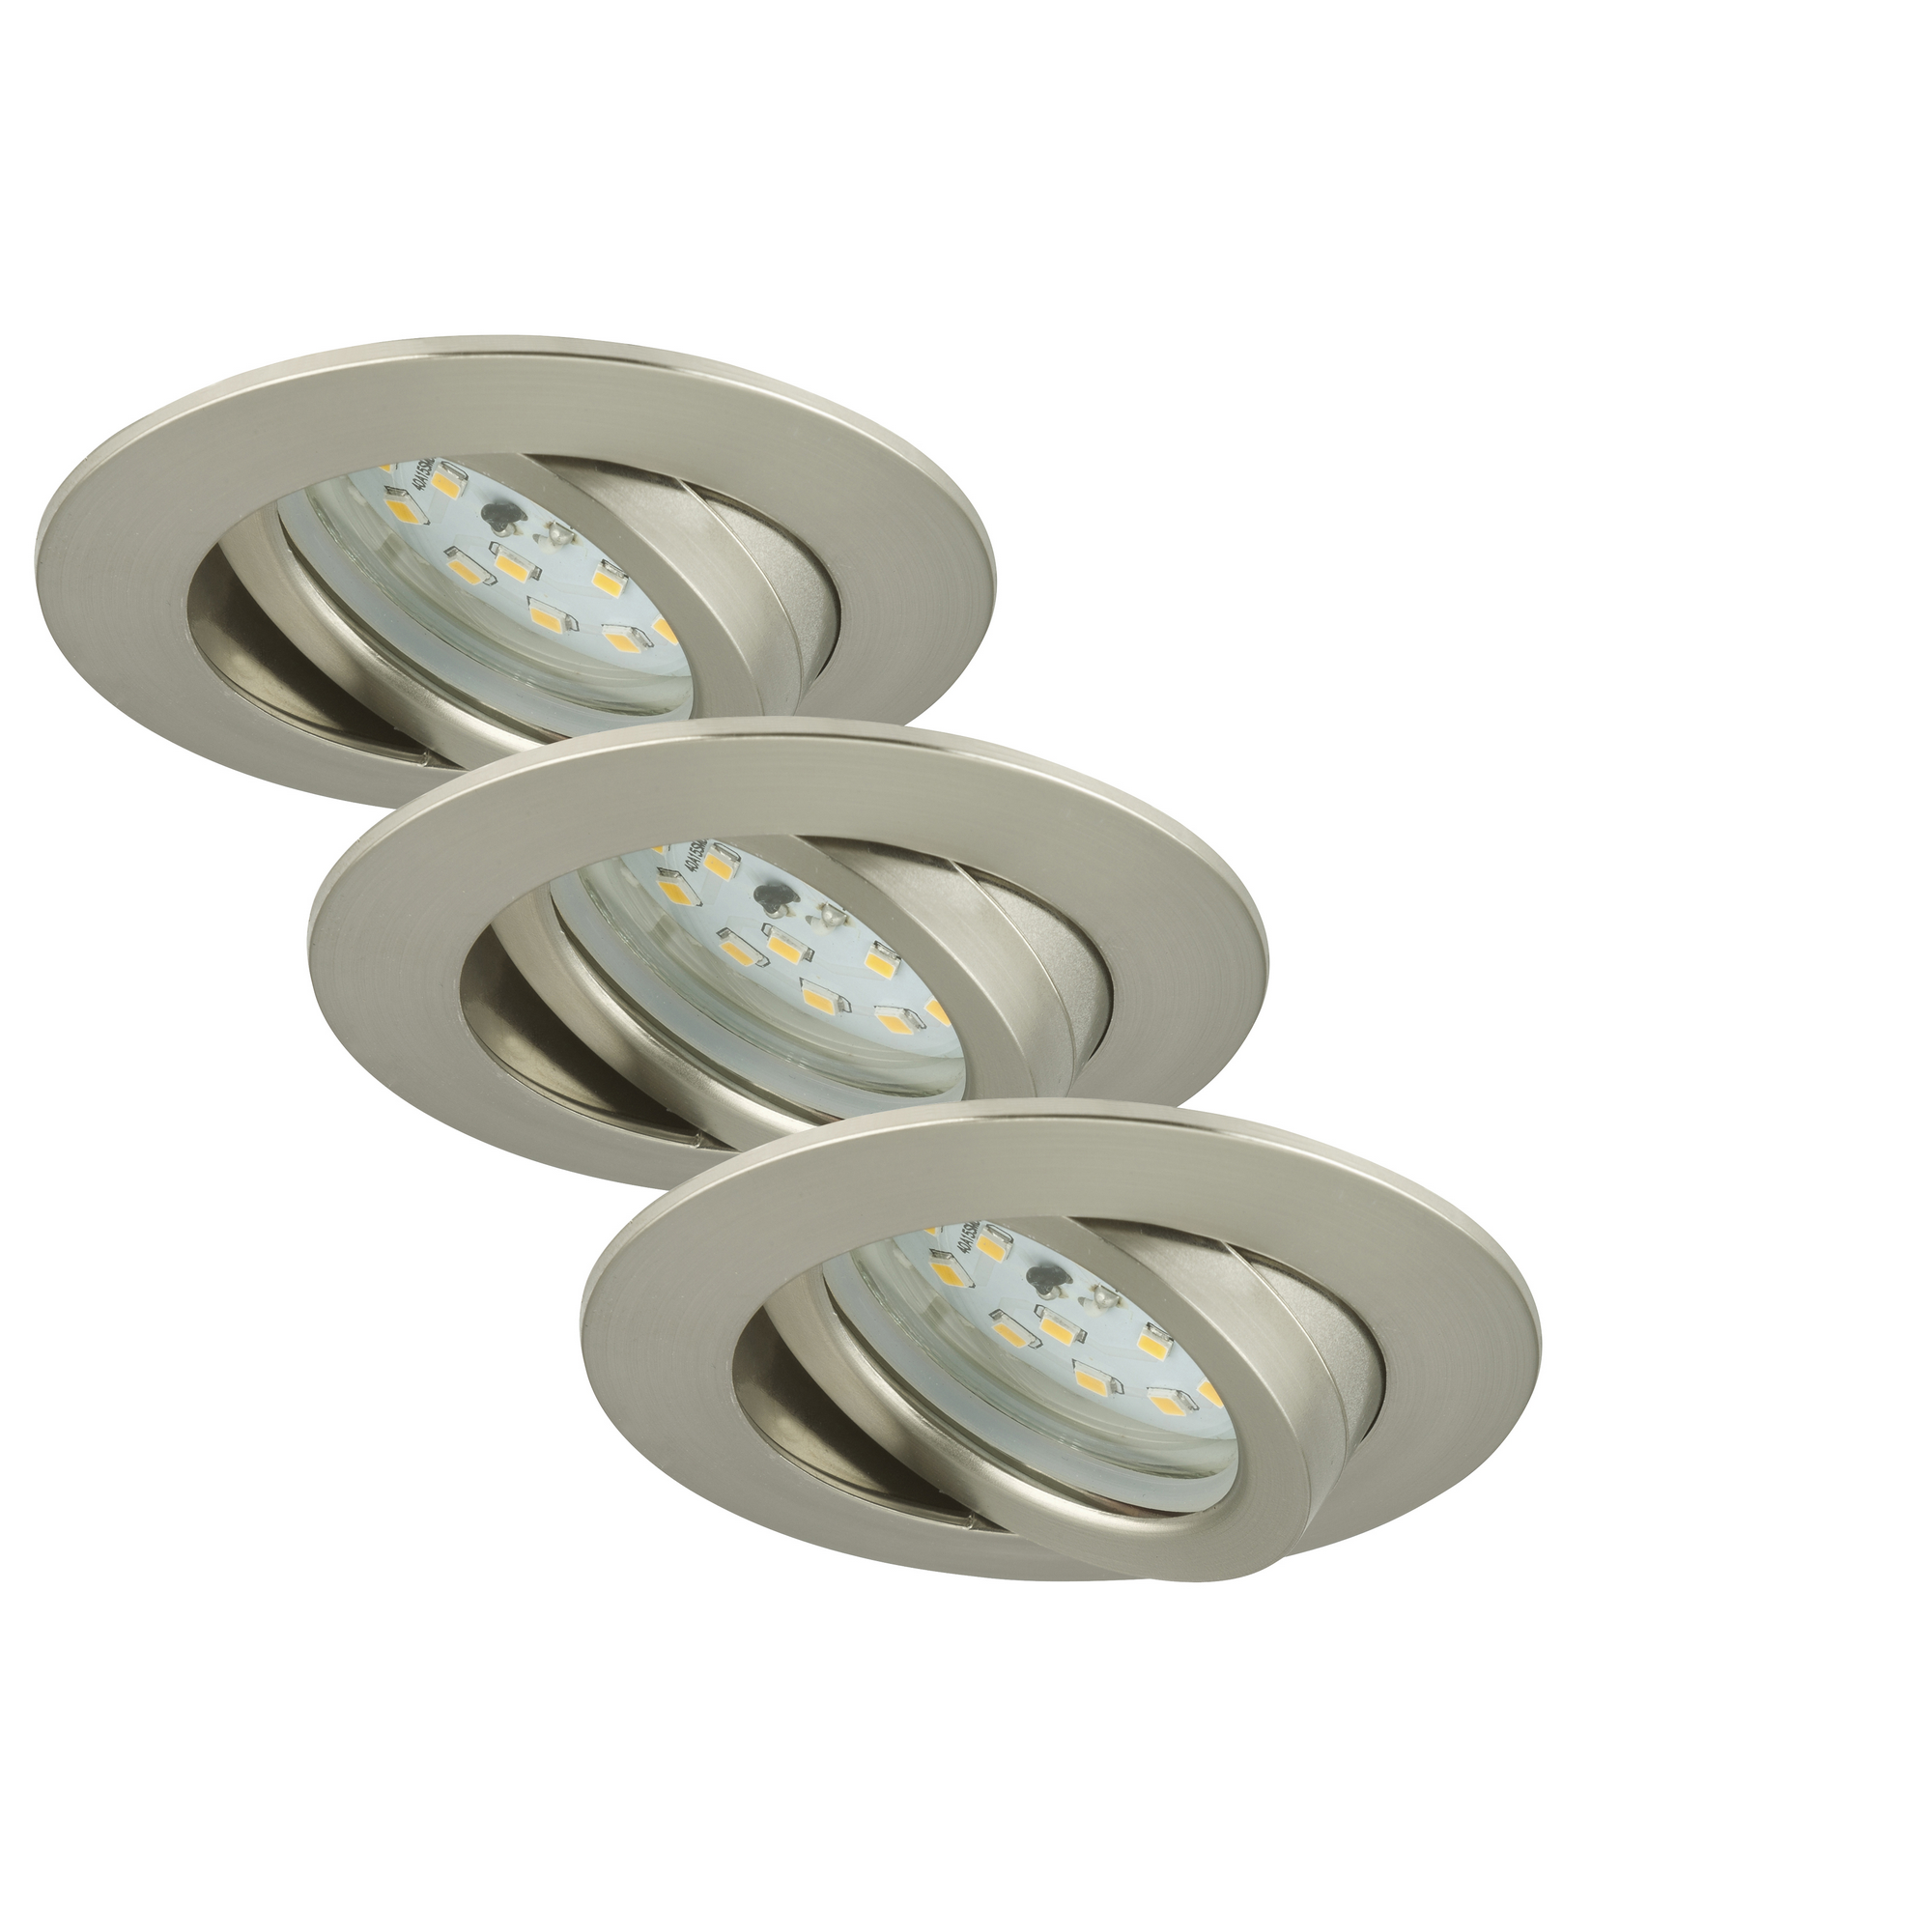 A 230V Leuchte Lampen schwenkbar 3/4/5er Set LED Decken-Einbau-Leuchten EKK 